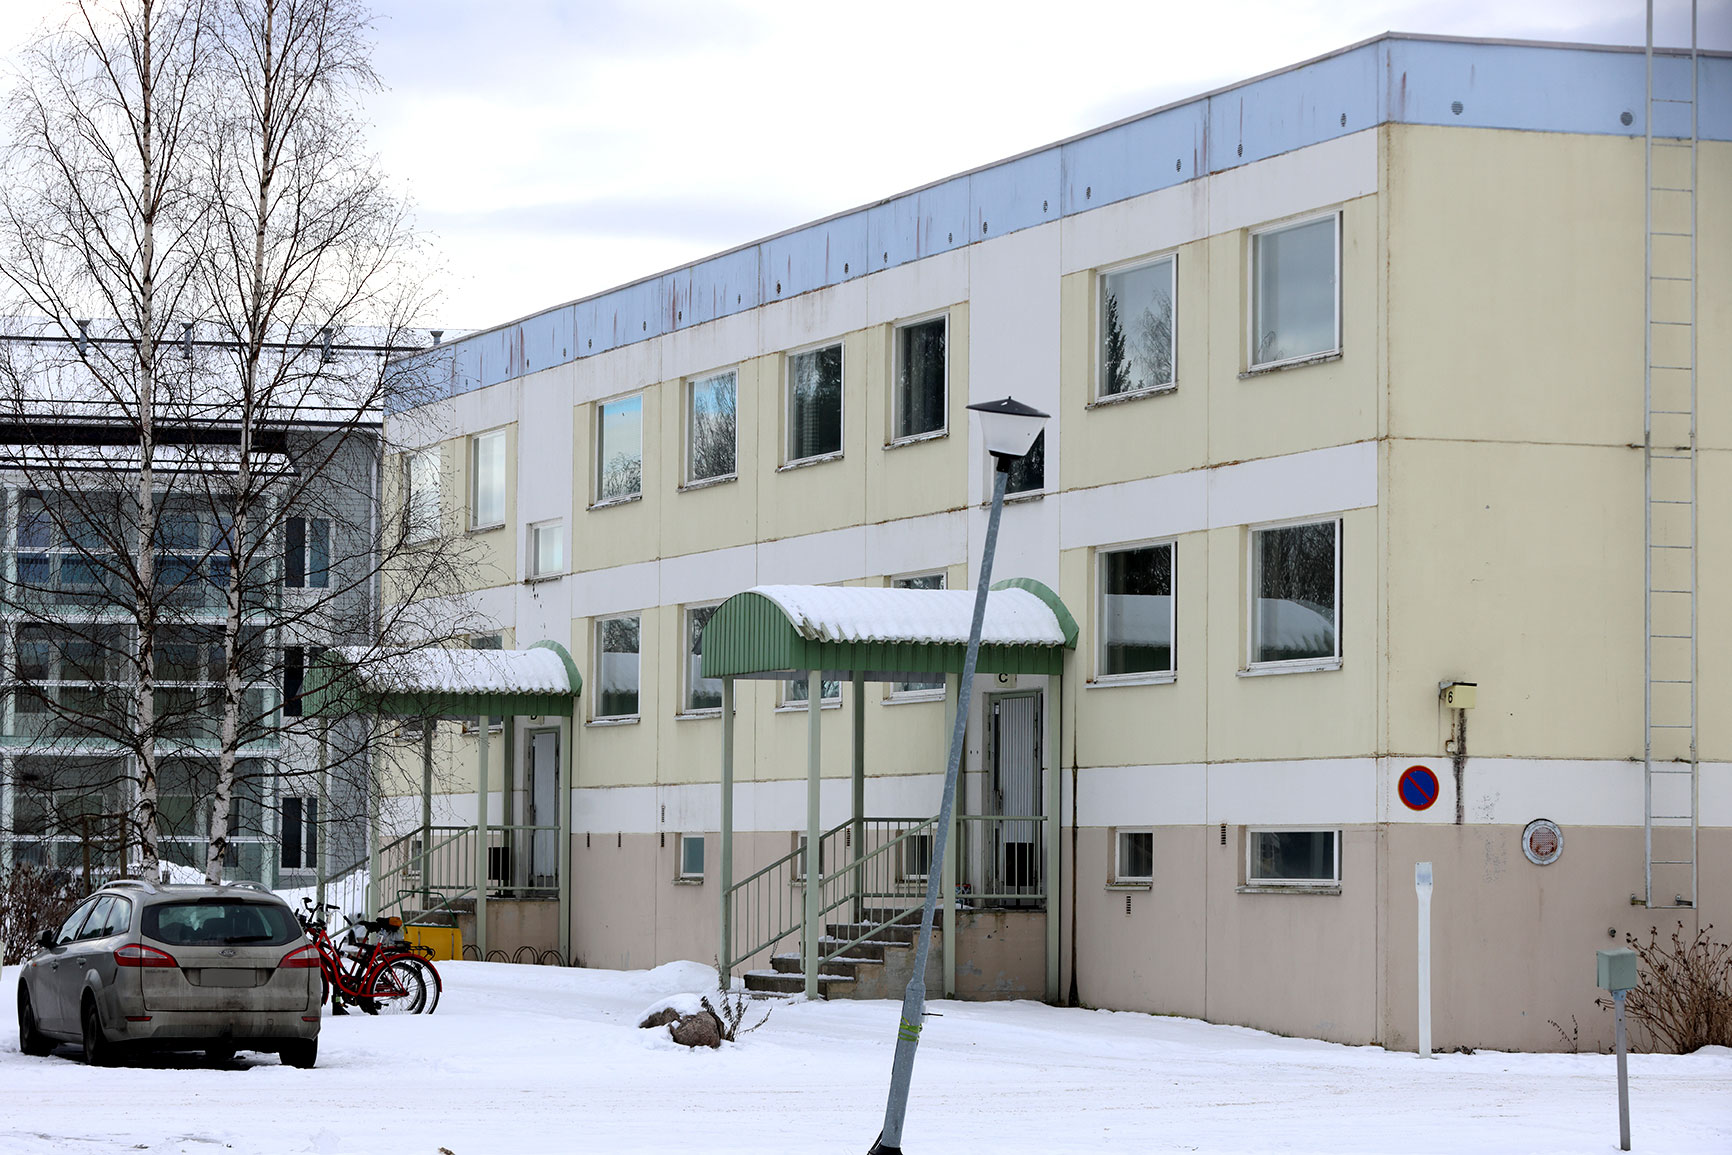 Kiinteistöosakeyhtiö Taloherttua purkaa yhden Kurvis-Höllin tiellä sijaitsevista vuokrakerrostaloistaan. Näillä näkymin purkaminen toteutuu alkusyksystä. Kuva: Jouni Valkeeniemi